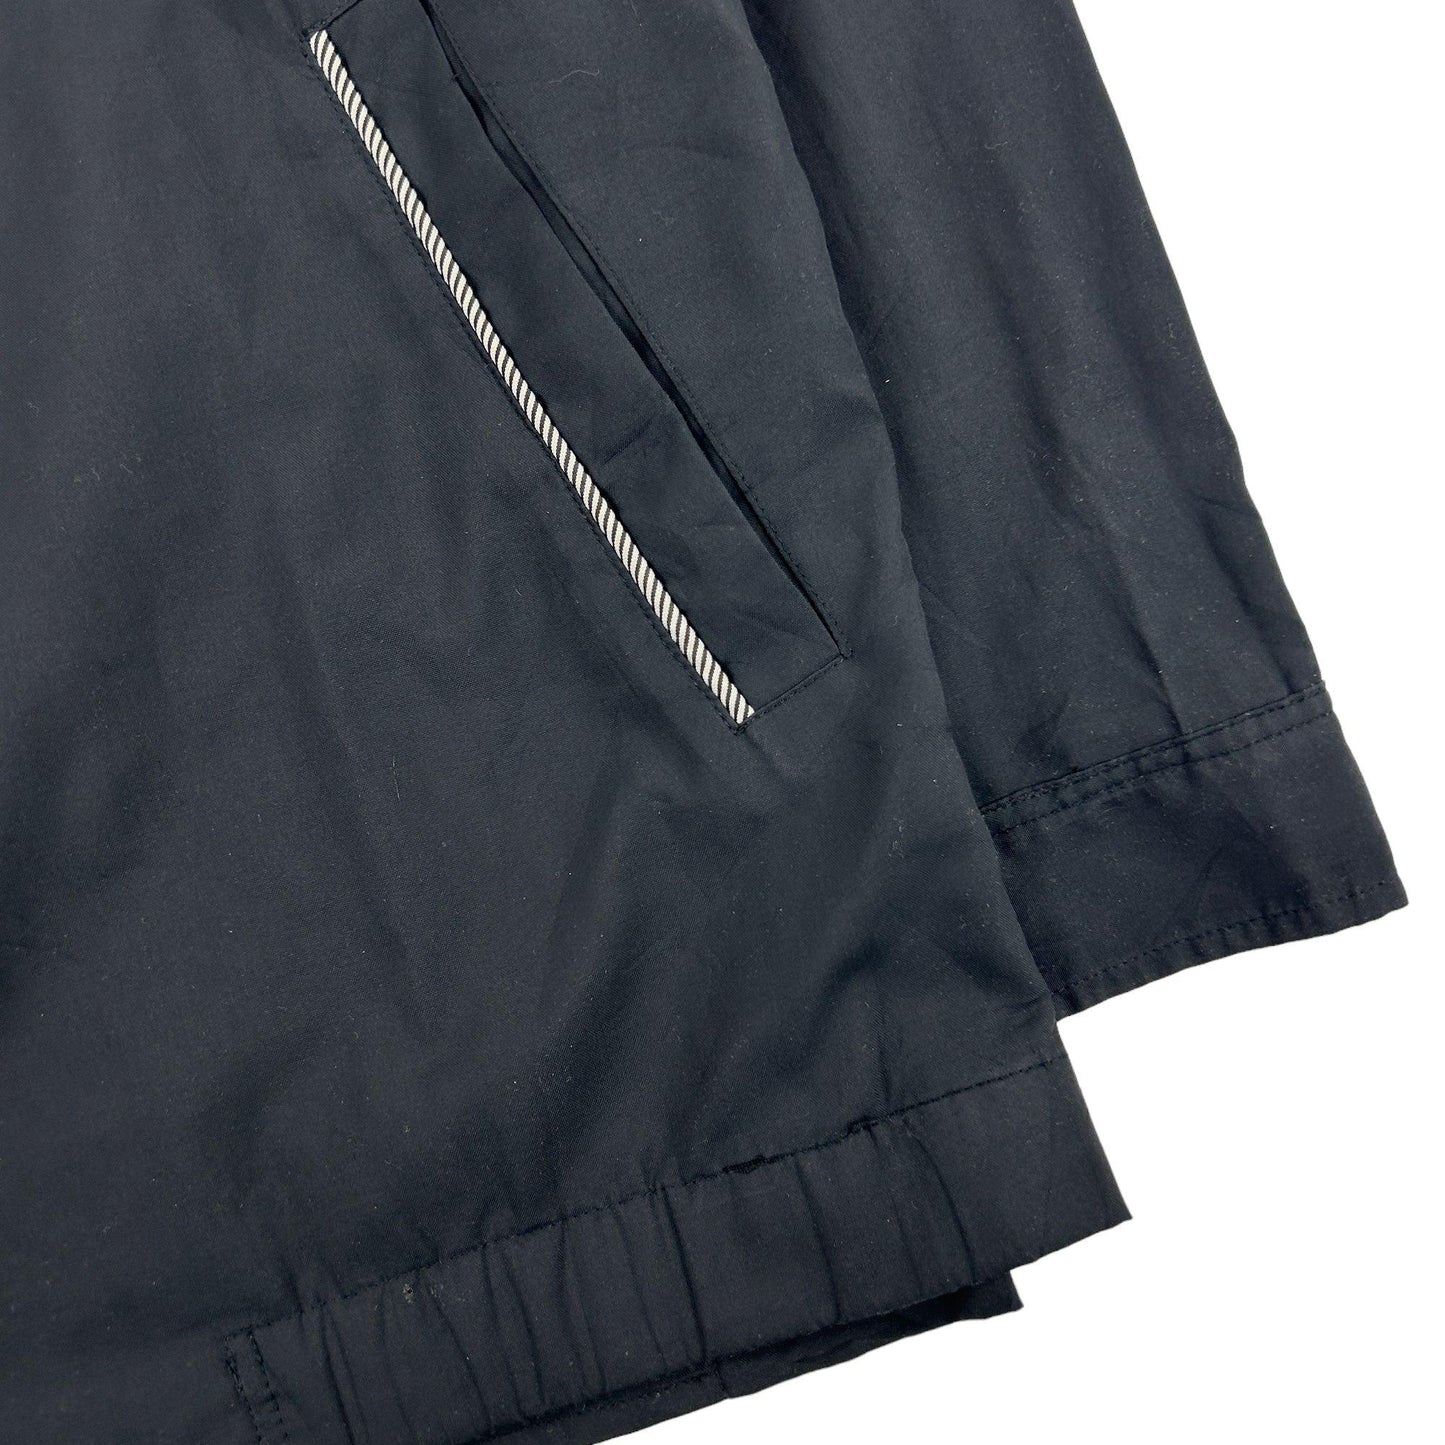 Vintage Yves Saint Laurent Jacket Size M - Known Source